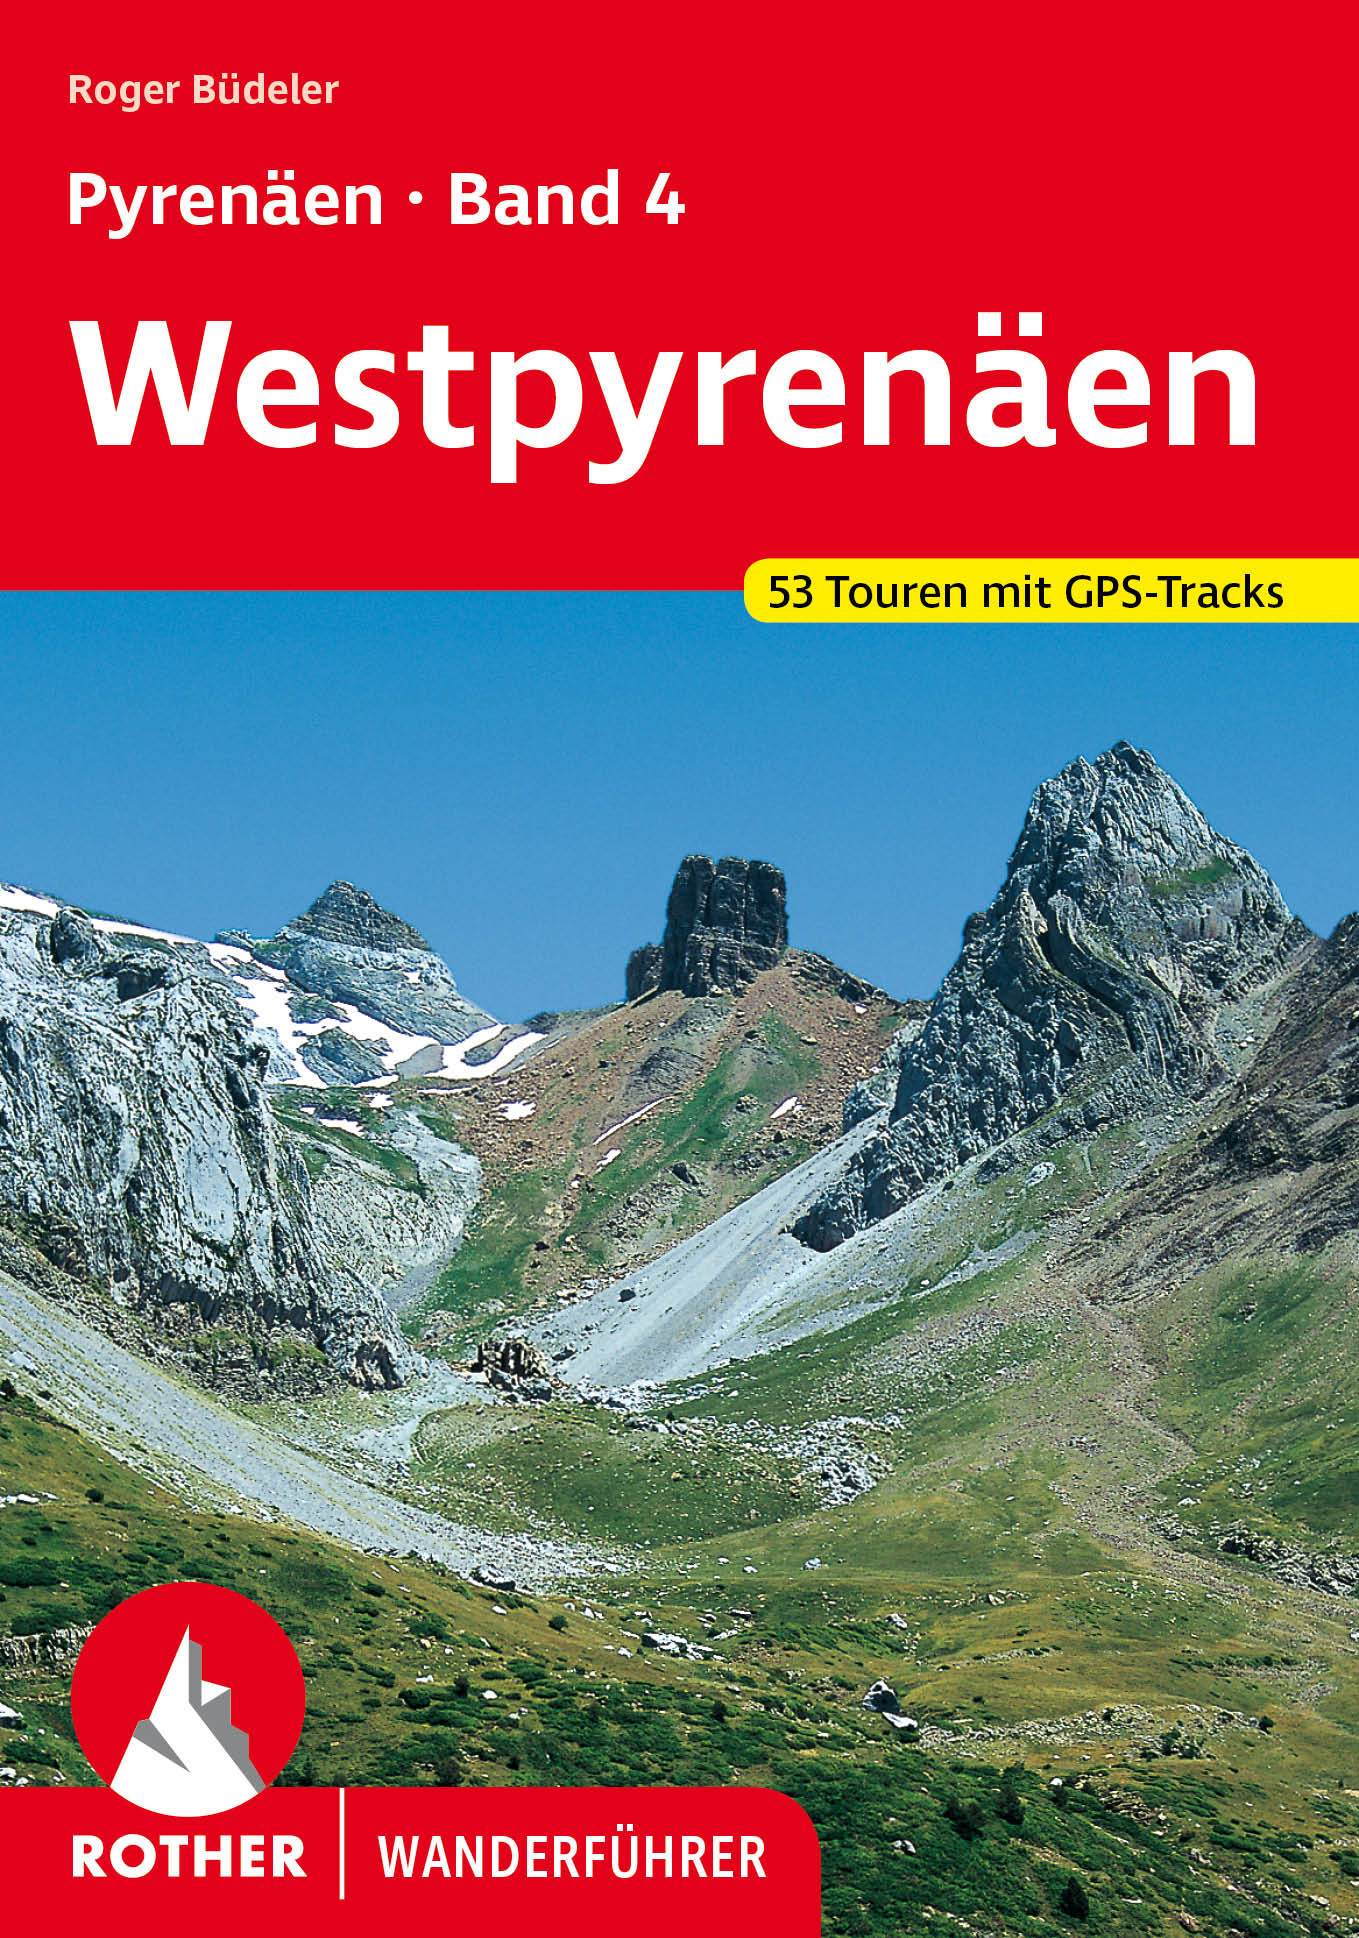 Online bestellen: Wandelgids 287 Rother Wandefuhrer Spanje Pyrenäen 4 - Spanische und französische Westpyrenäen | Rother Bergverlag